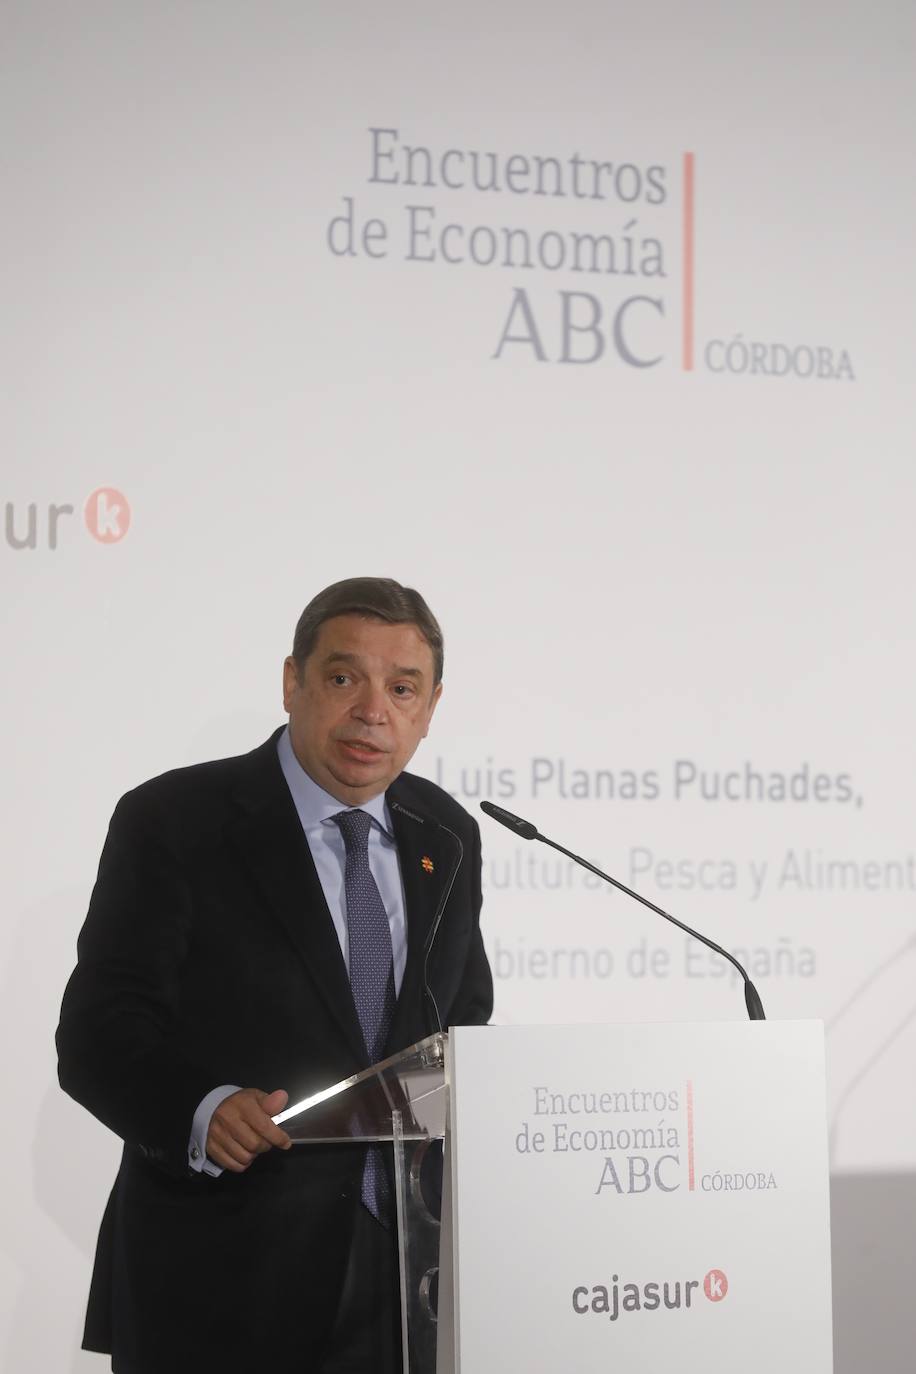 El Encuentro de Economía de ABC Córdoba con el ministro de Agricultura, en imágenes (II)